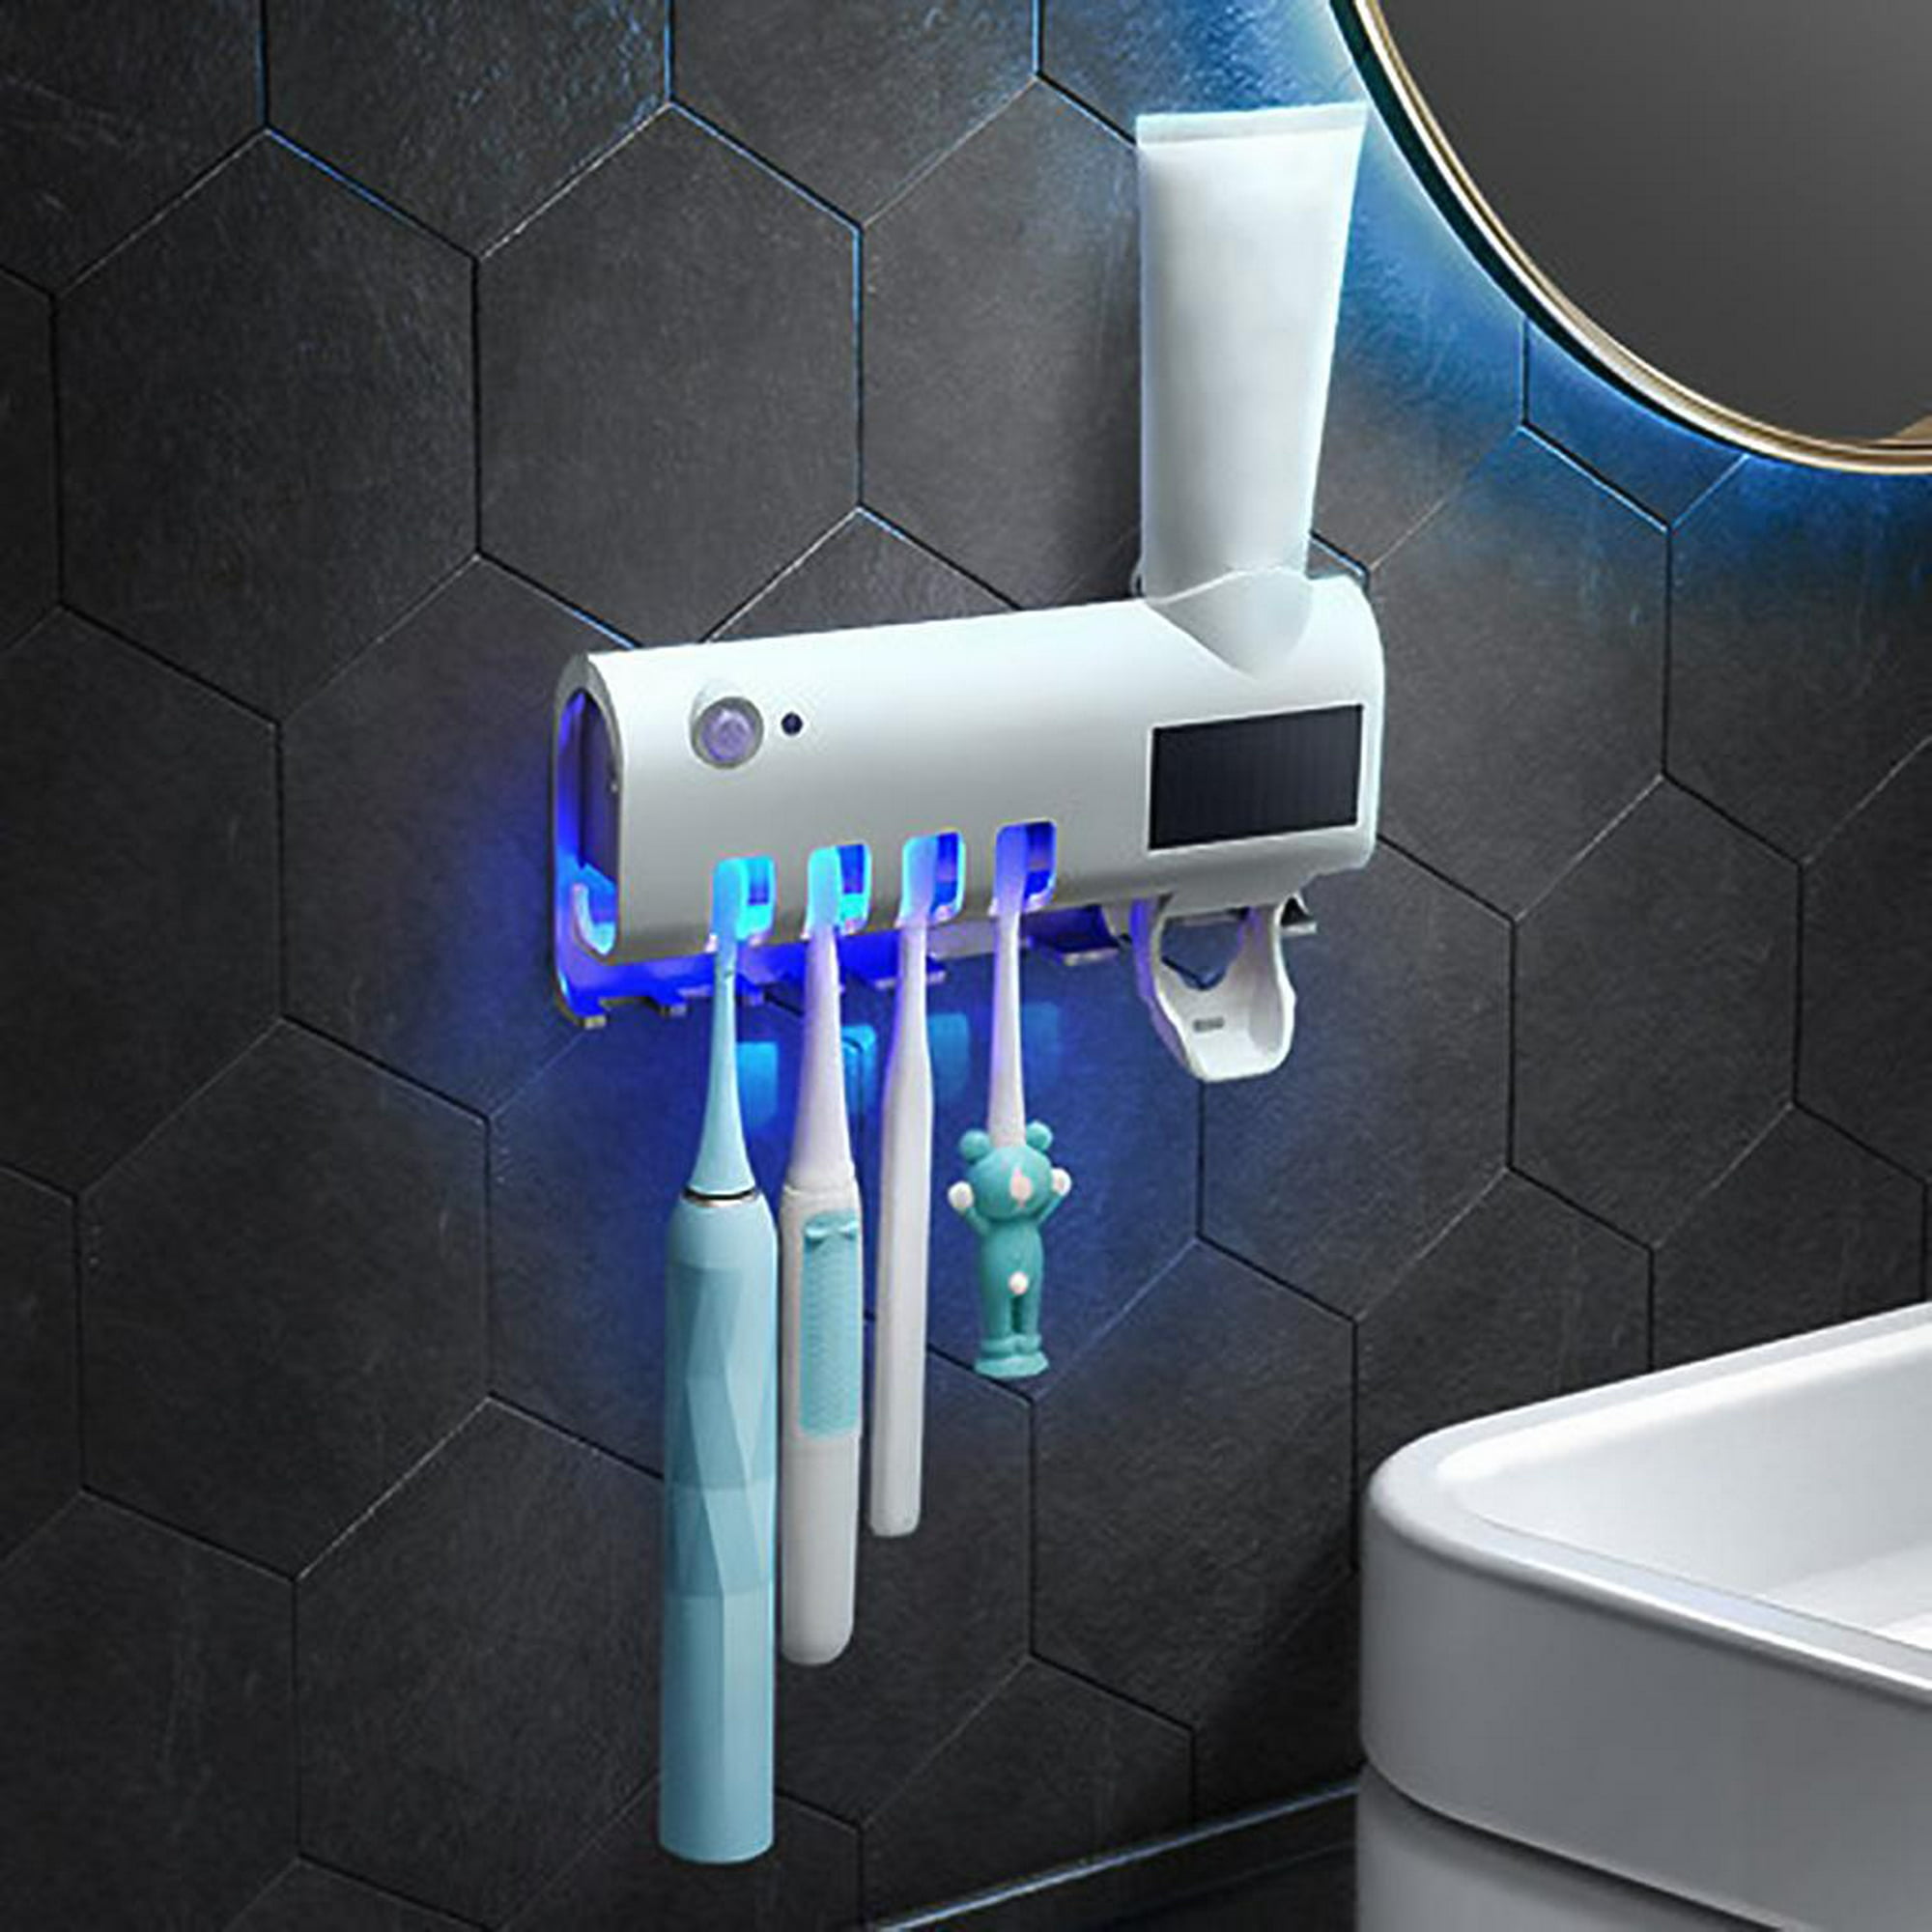 Soporte para cepillo de dientes montado en la pared, dispensador de cepillo  de dientes, función de luz de cepillo de dientes, energía solar recargable